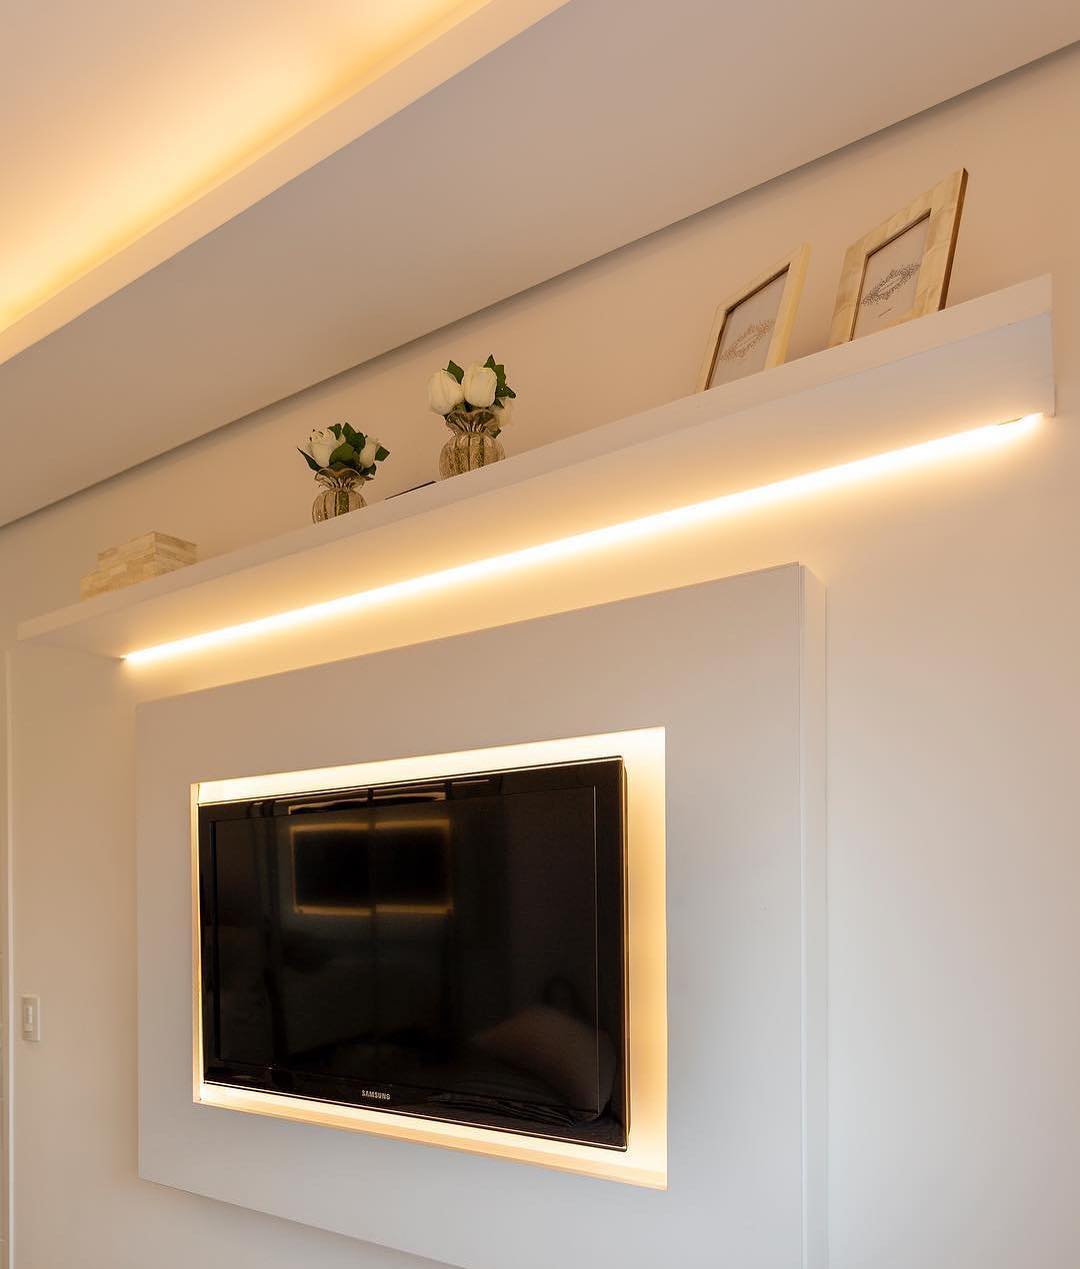 Como usar fita de LED na decoração? Descubra aqui algumas ideias incríveis para seu lar